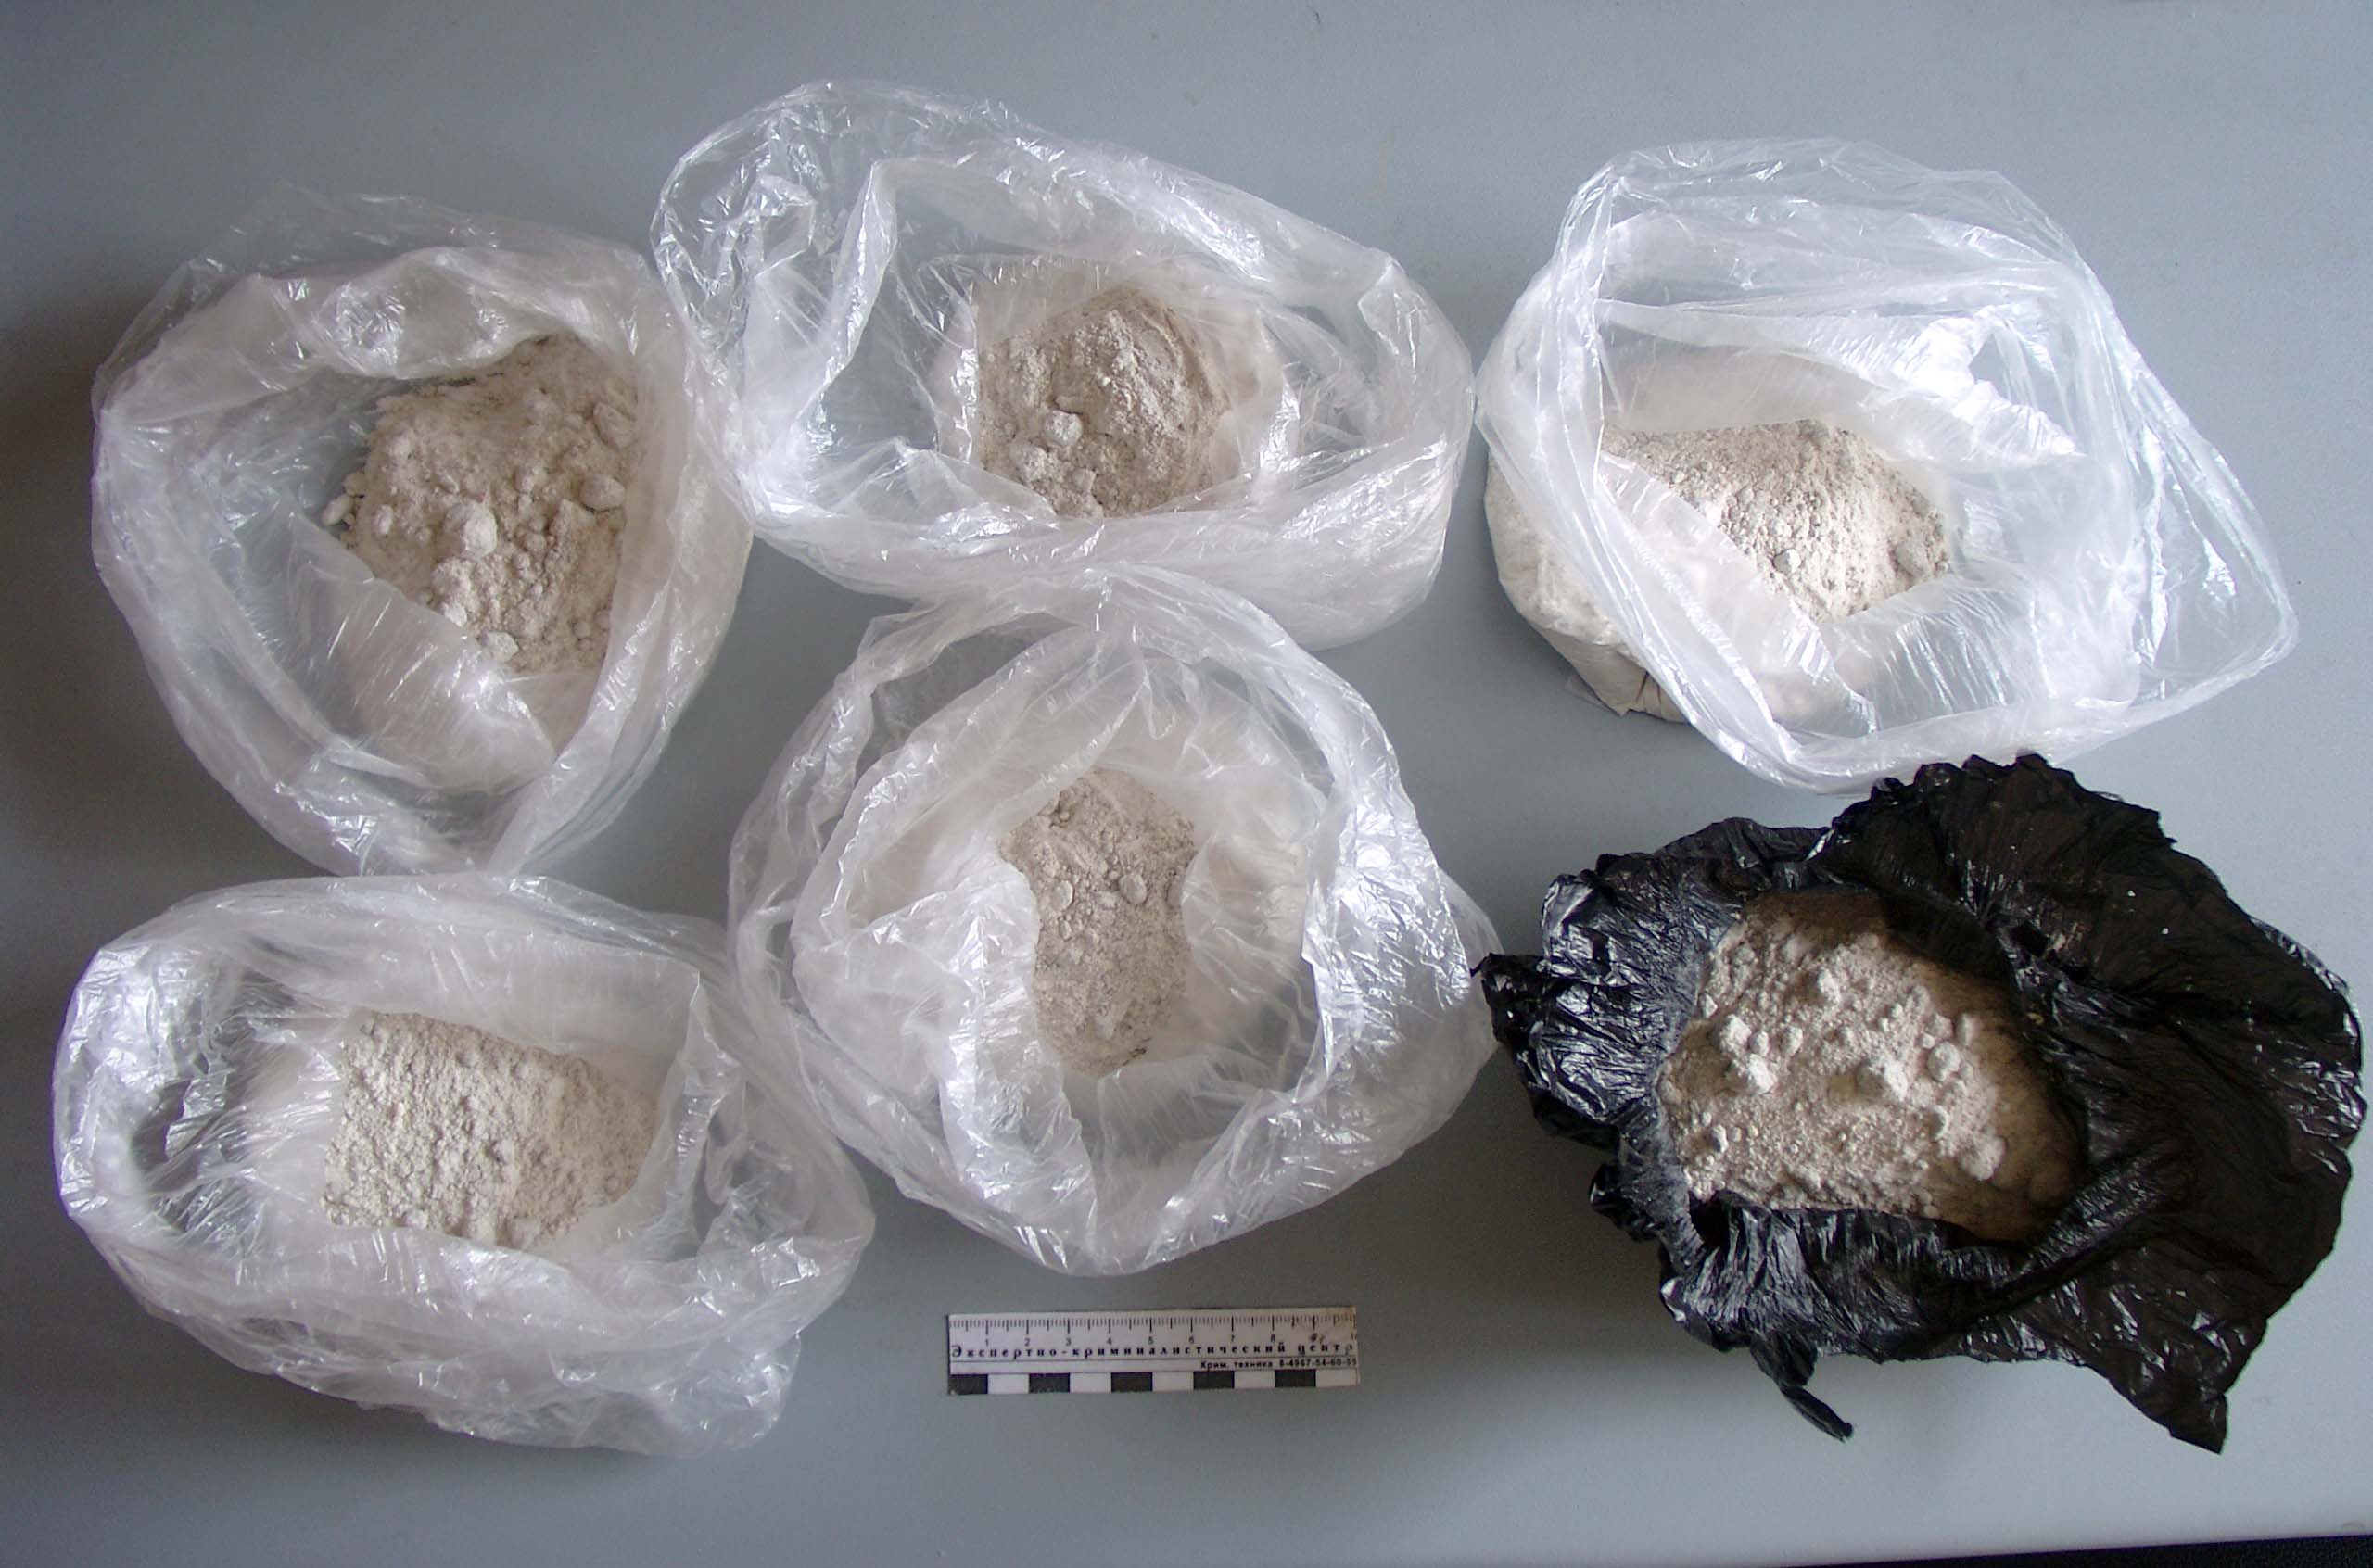 Drug smuggling prevented